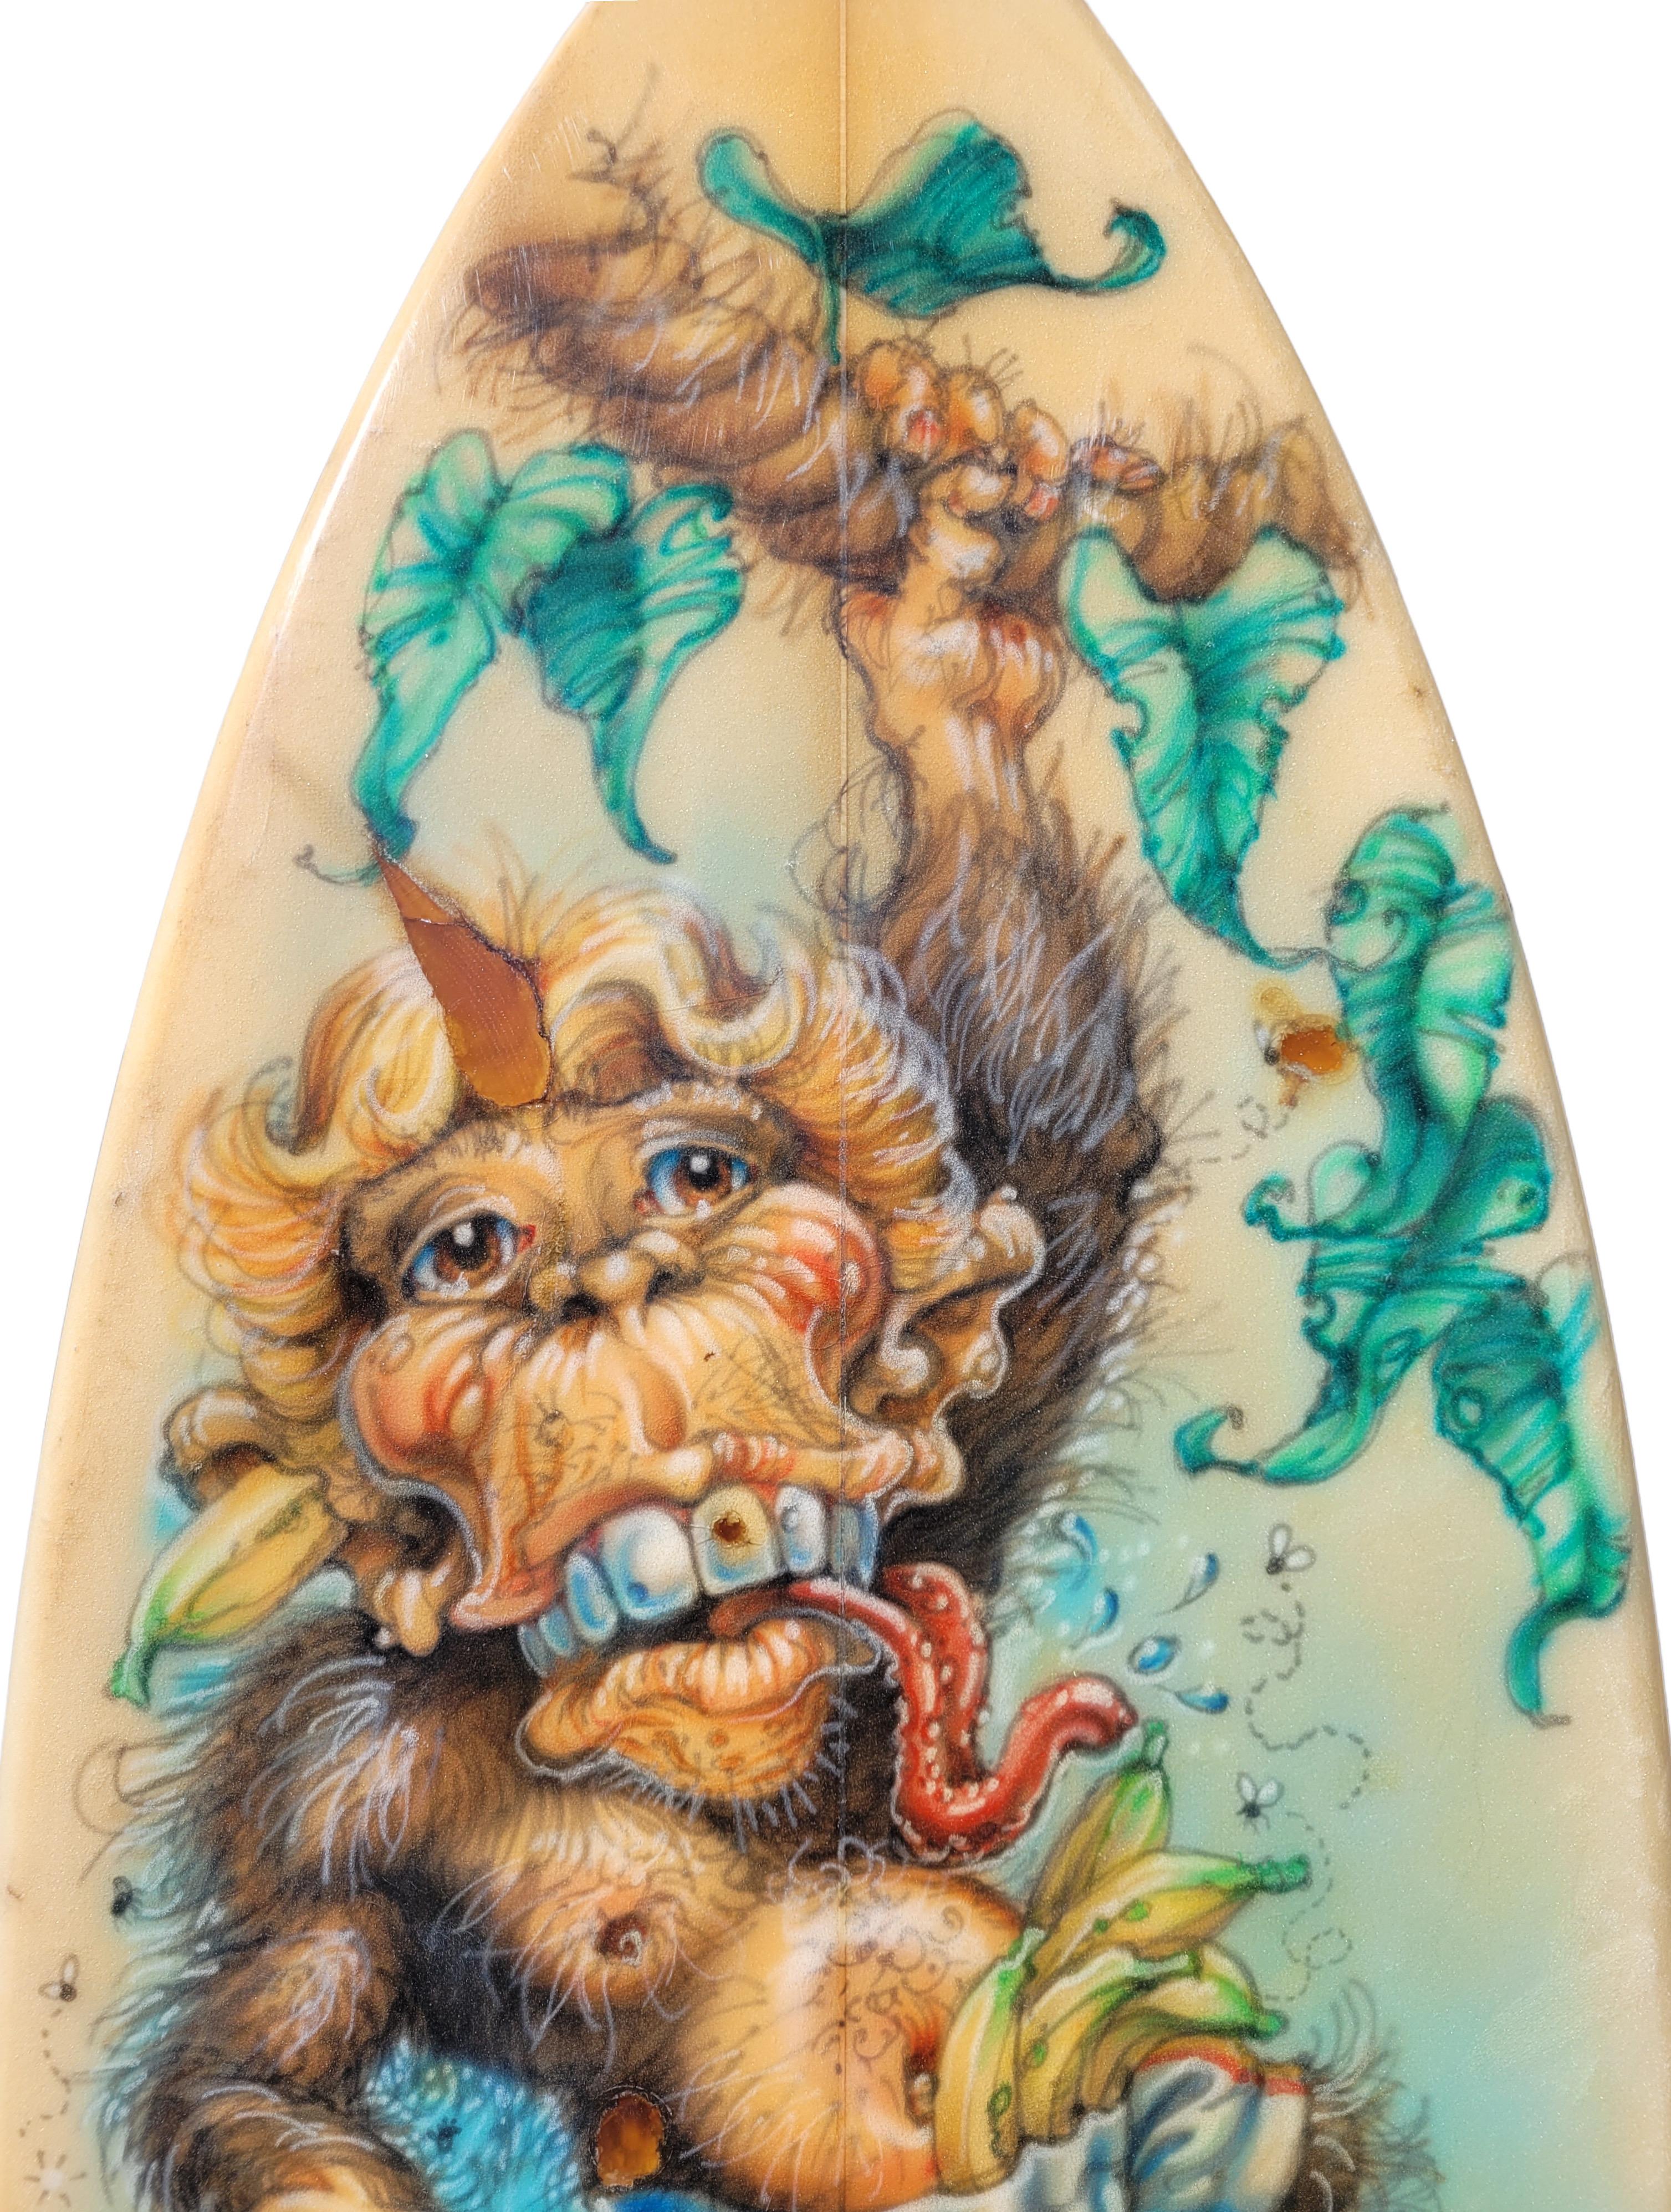 monkey on a surfboard